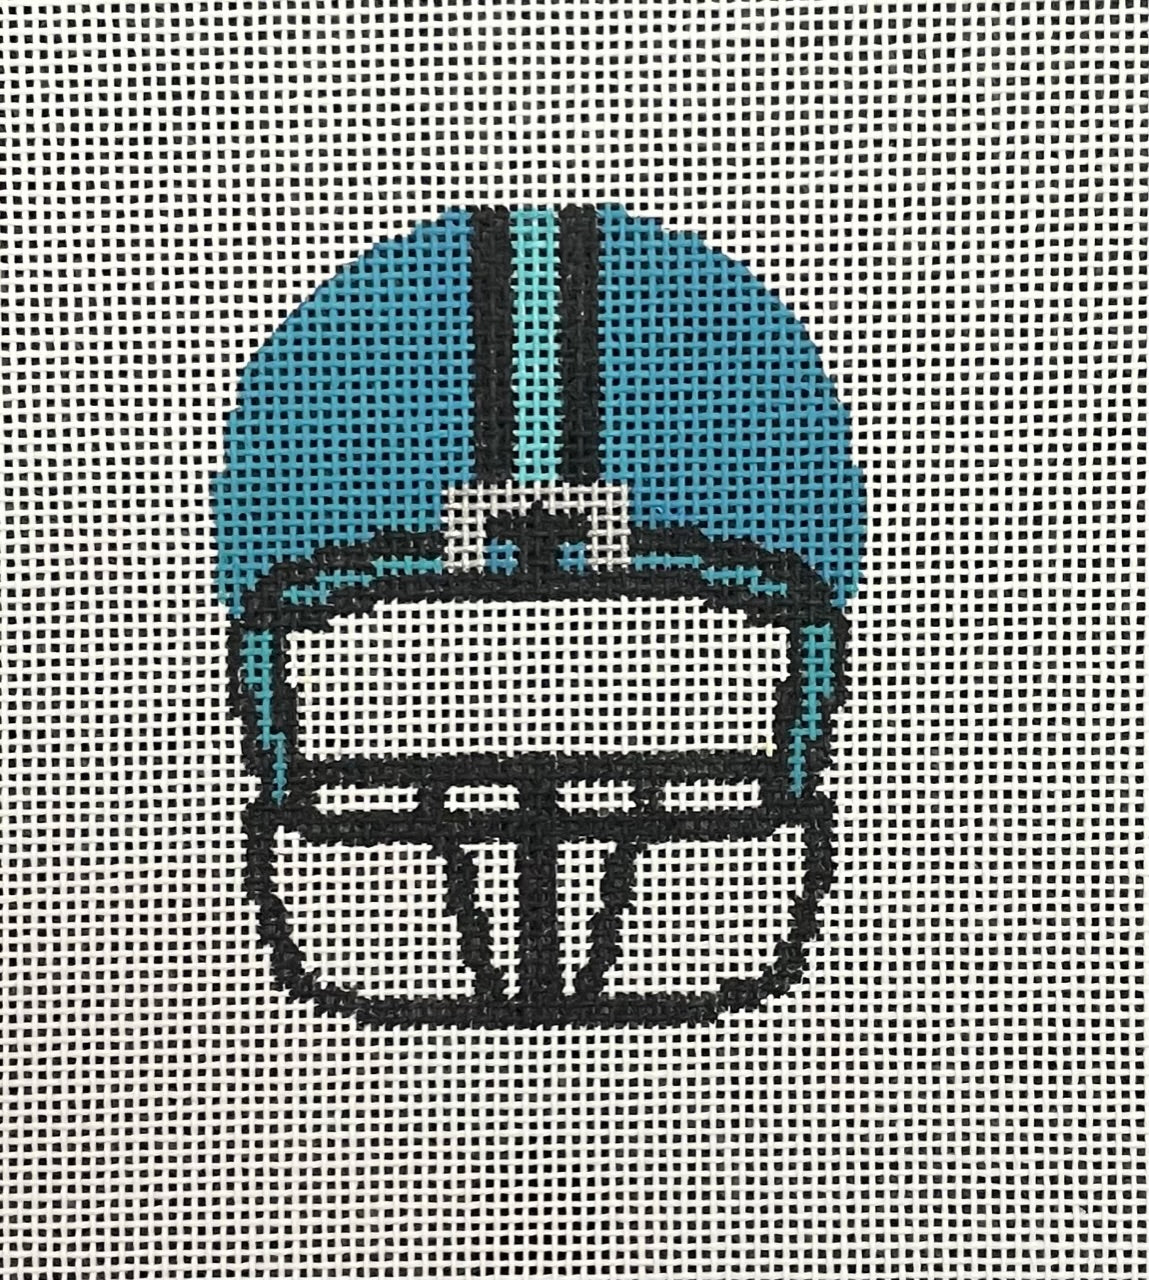 AL-090 - Football Helmet